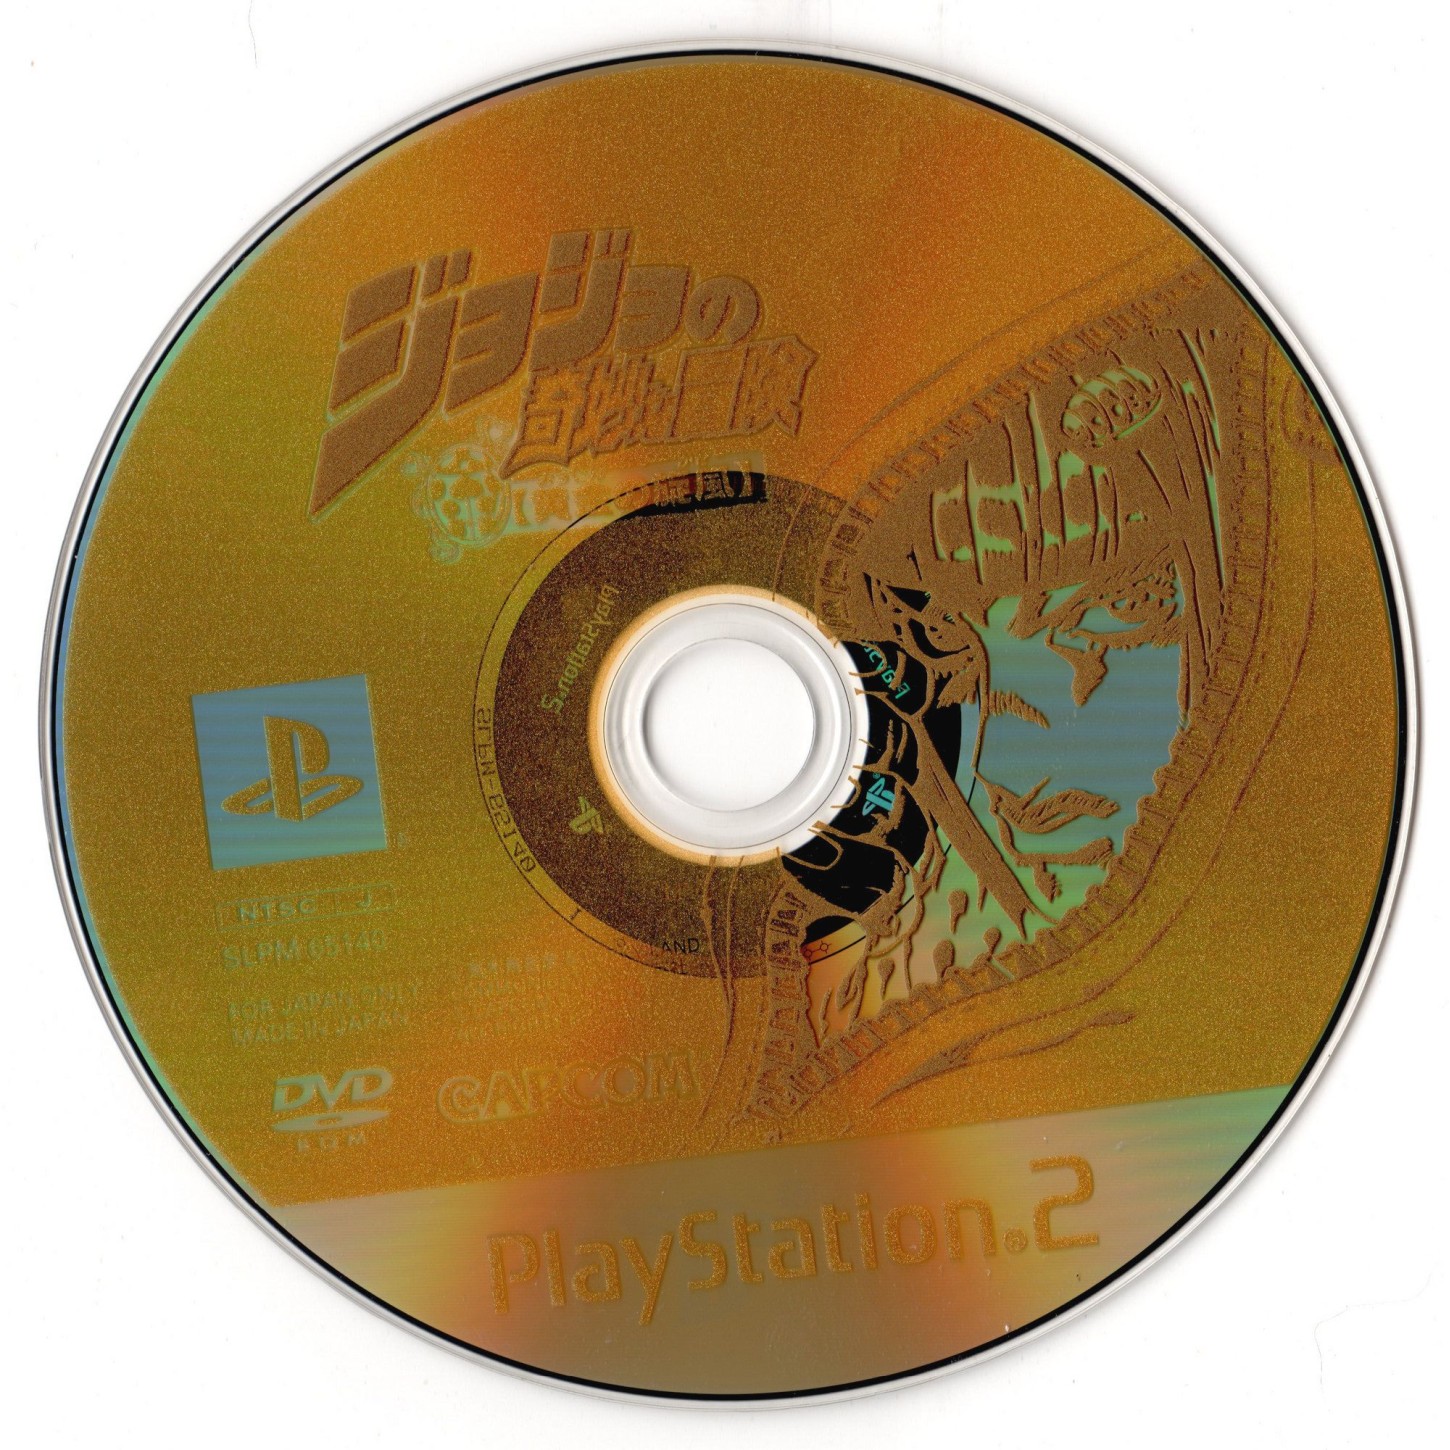 Jojo no Kimyou na Bouken - Ougon no Kaze (Japan) ROM (ISO) Download for  Sony Playstation 2 / PS2 